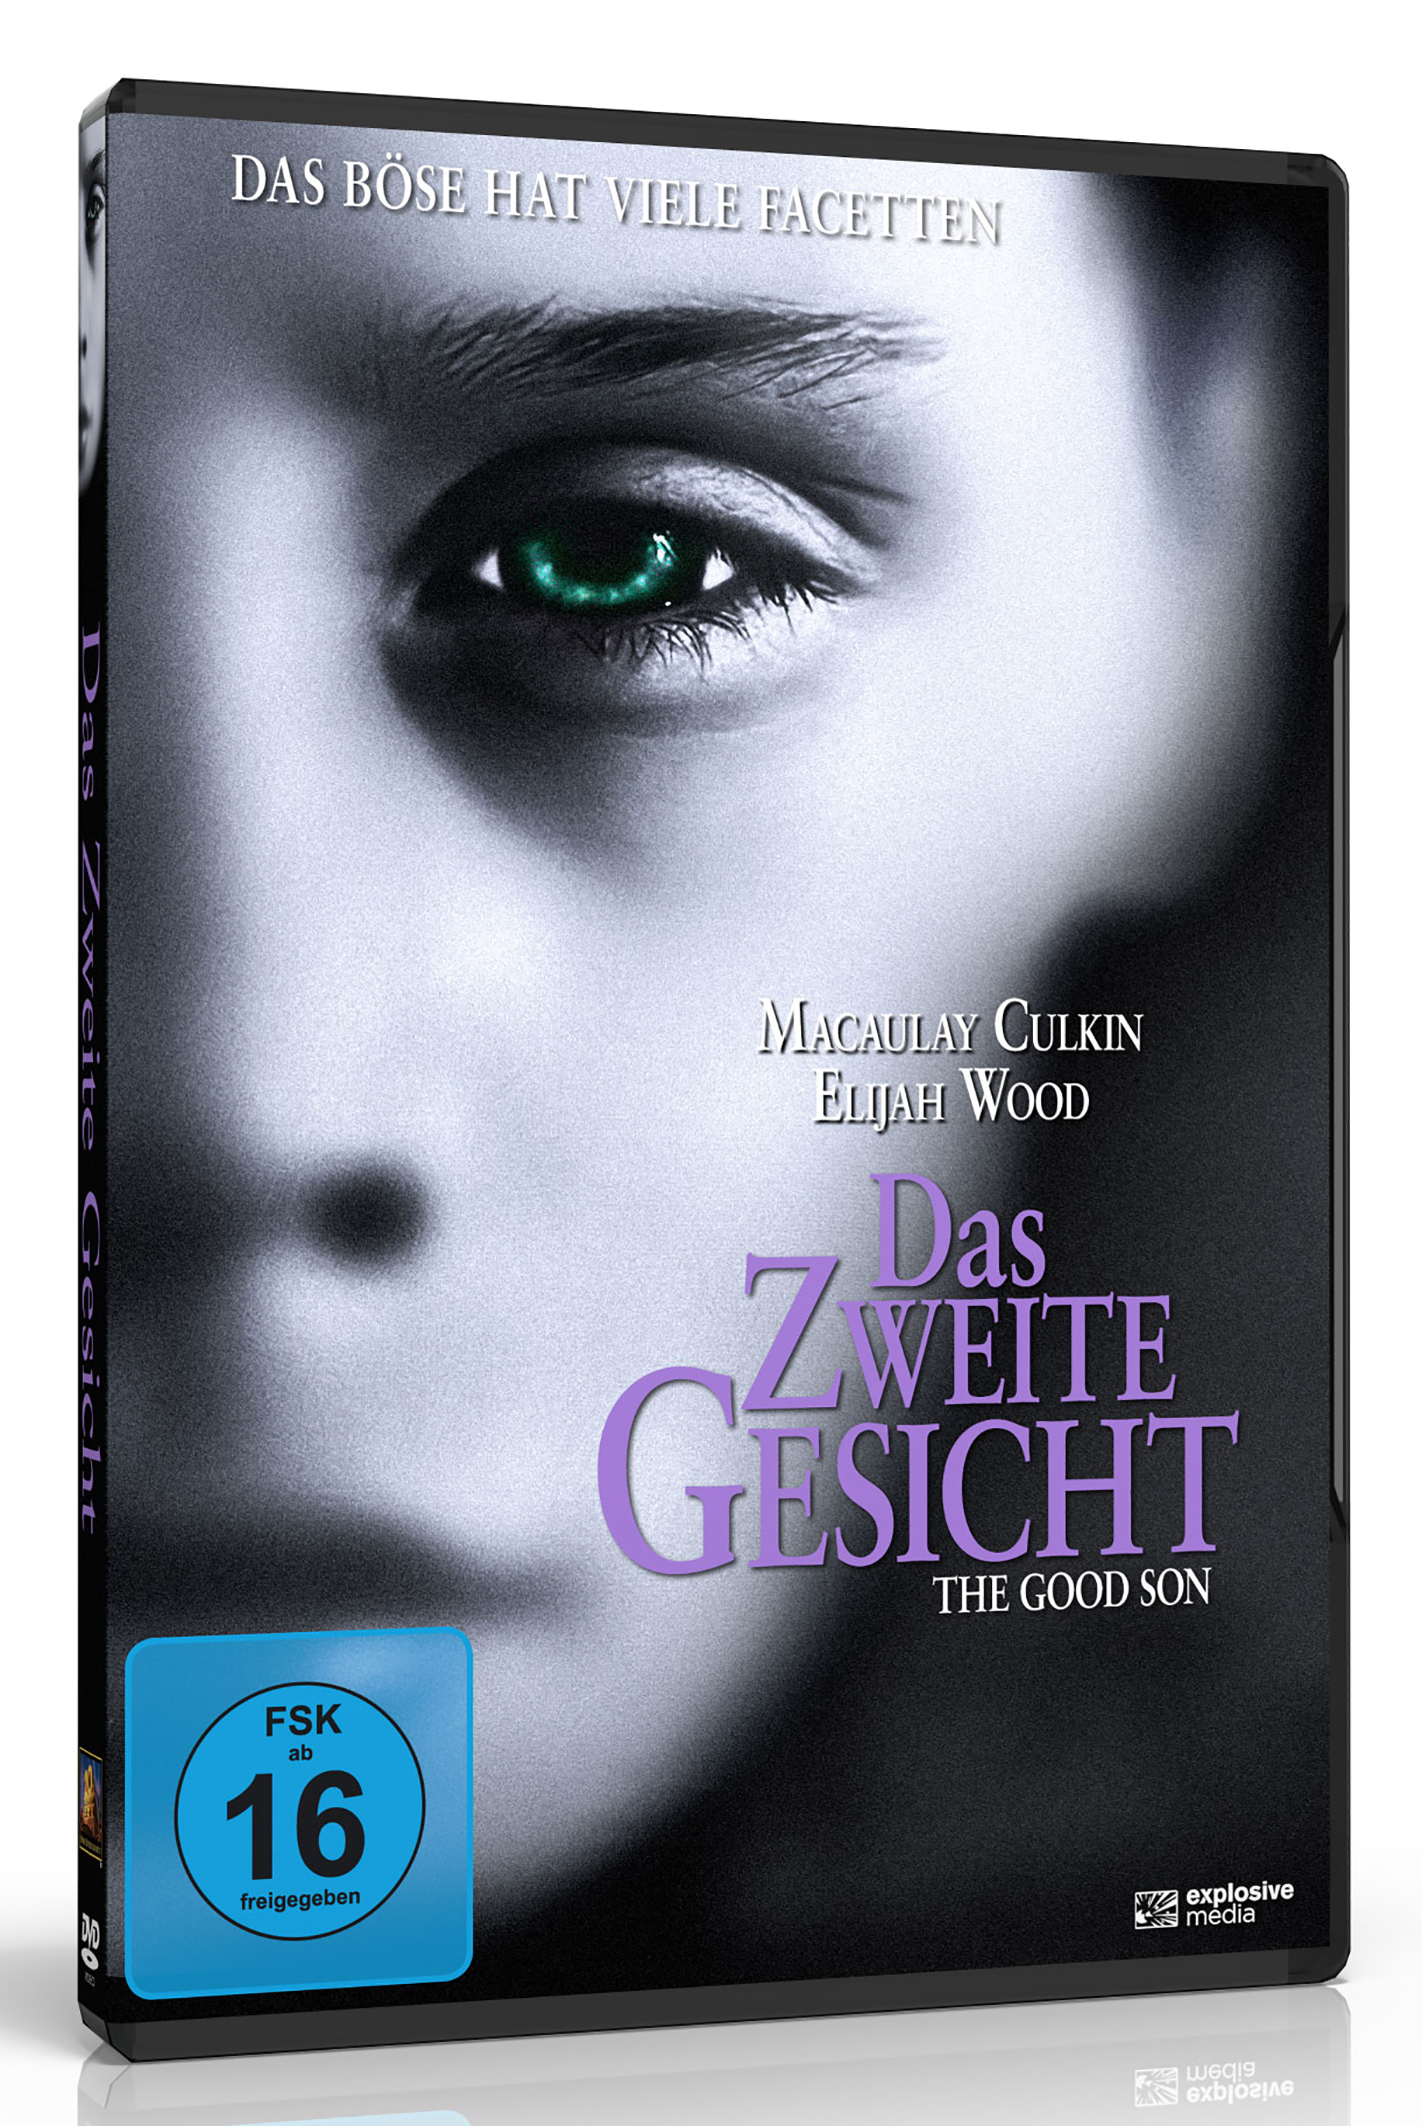 Das zweite Gesicht (DVD) Image 2